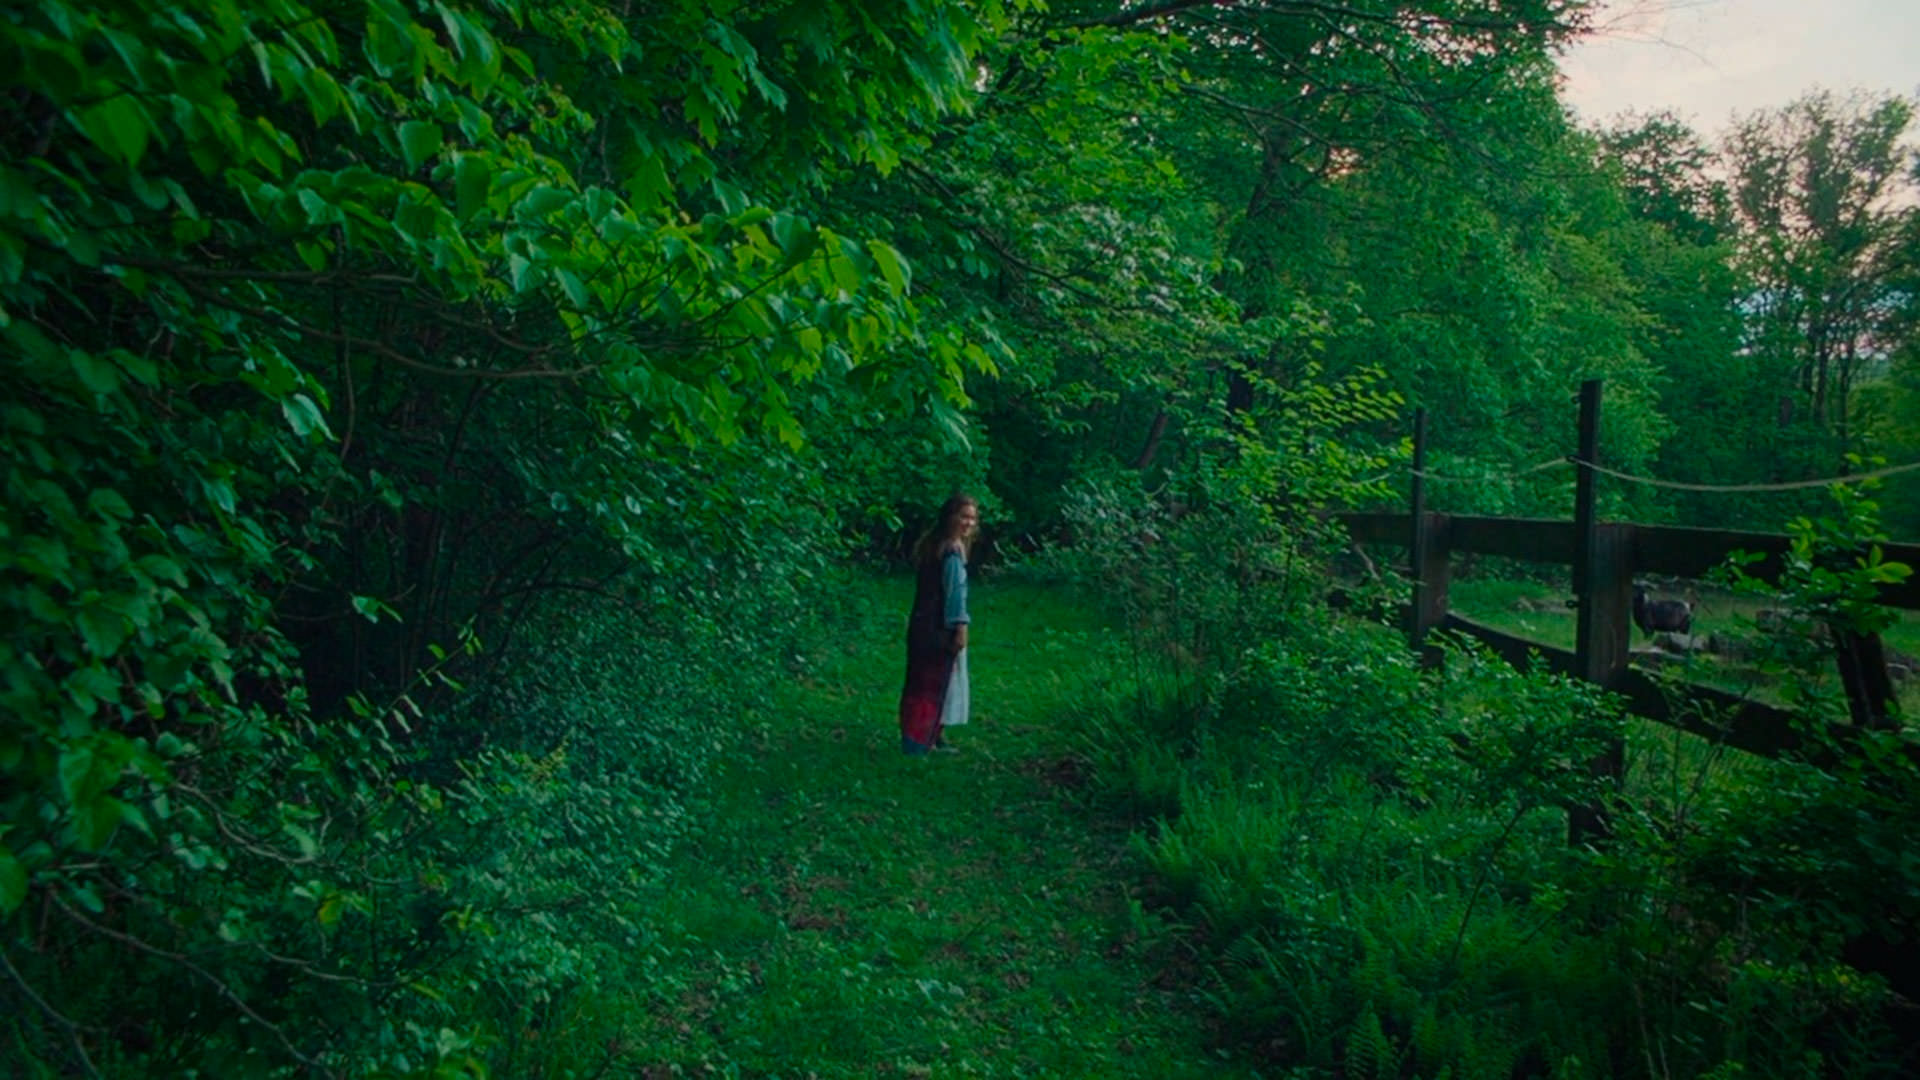 هیلی لو ریچاردسون در میان طبیعت سبز در نمایی از فیلم بعد از یانگ به کارگردانی کوگونادا